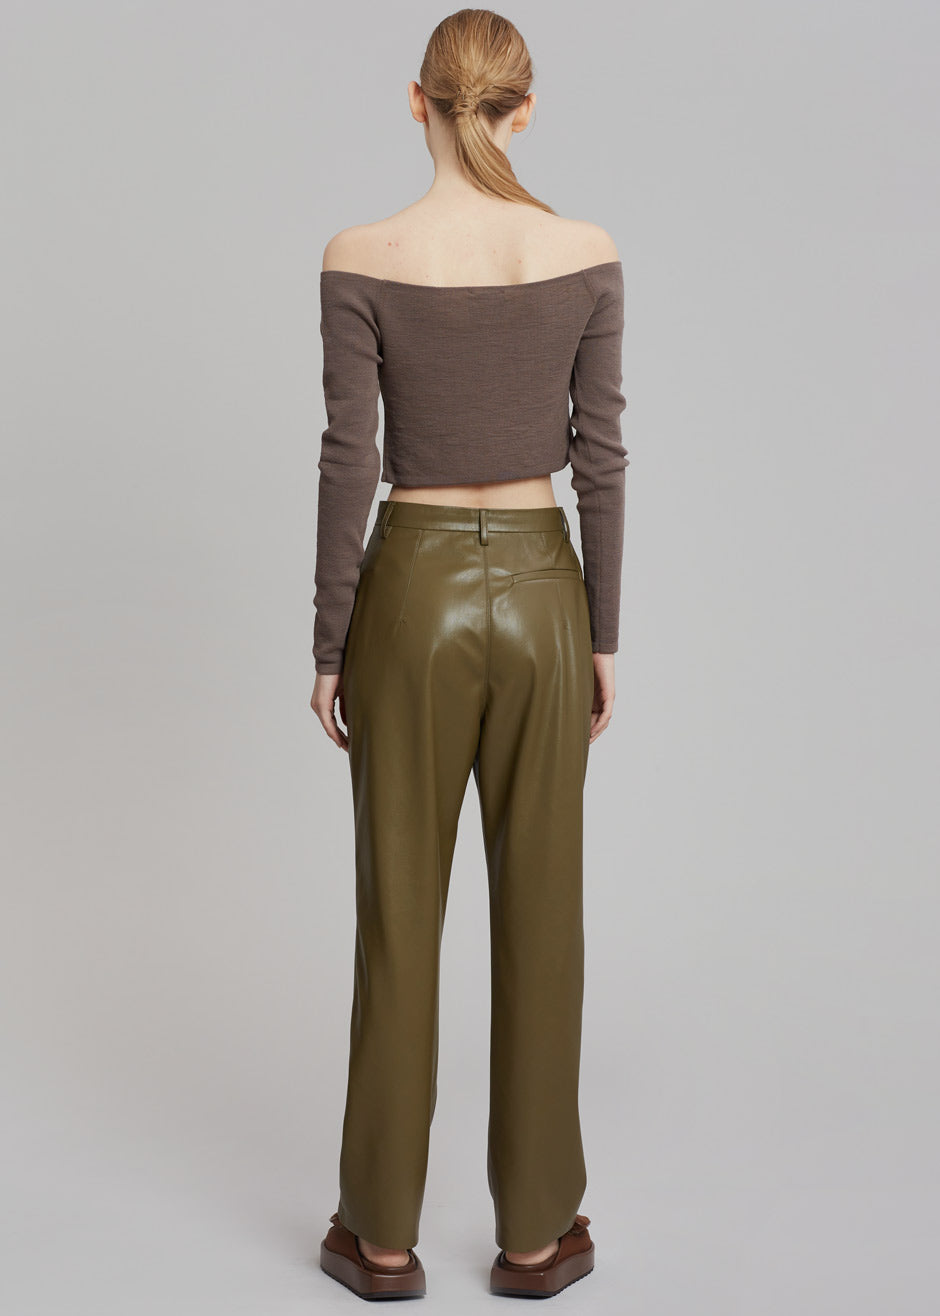 Nanushka Lucee Vegan Leather Pants - Olive - 8